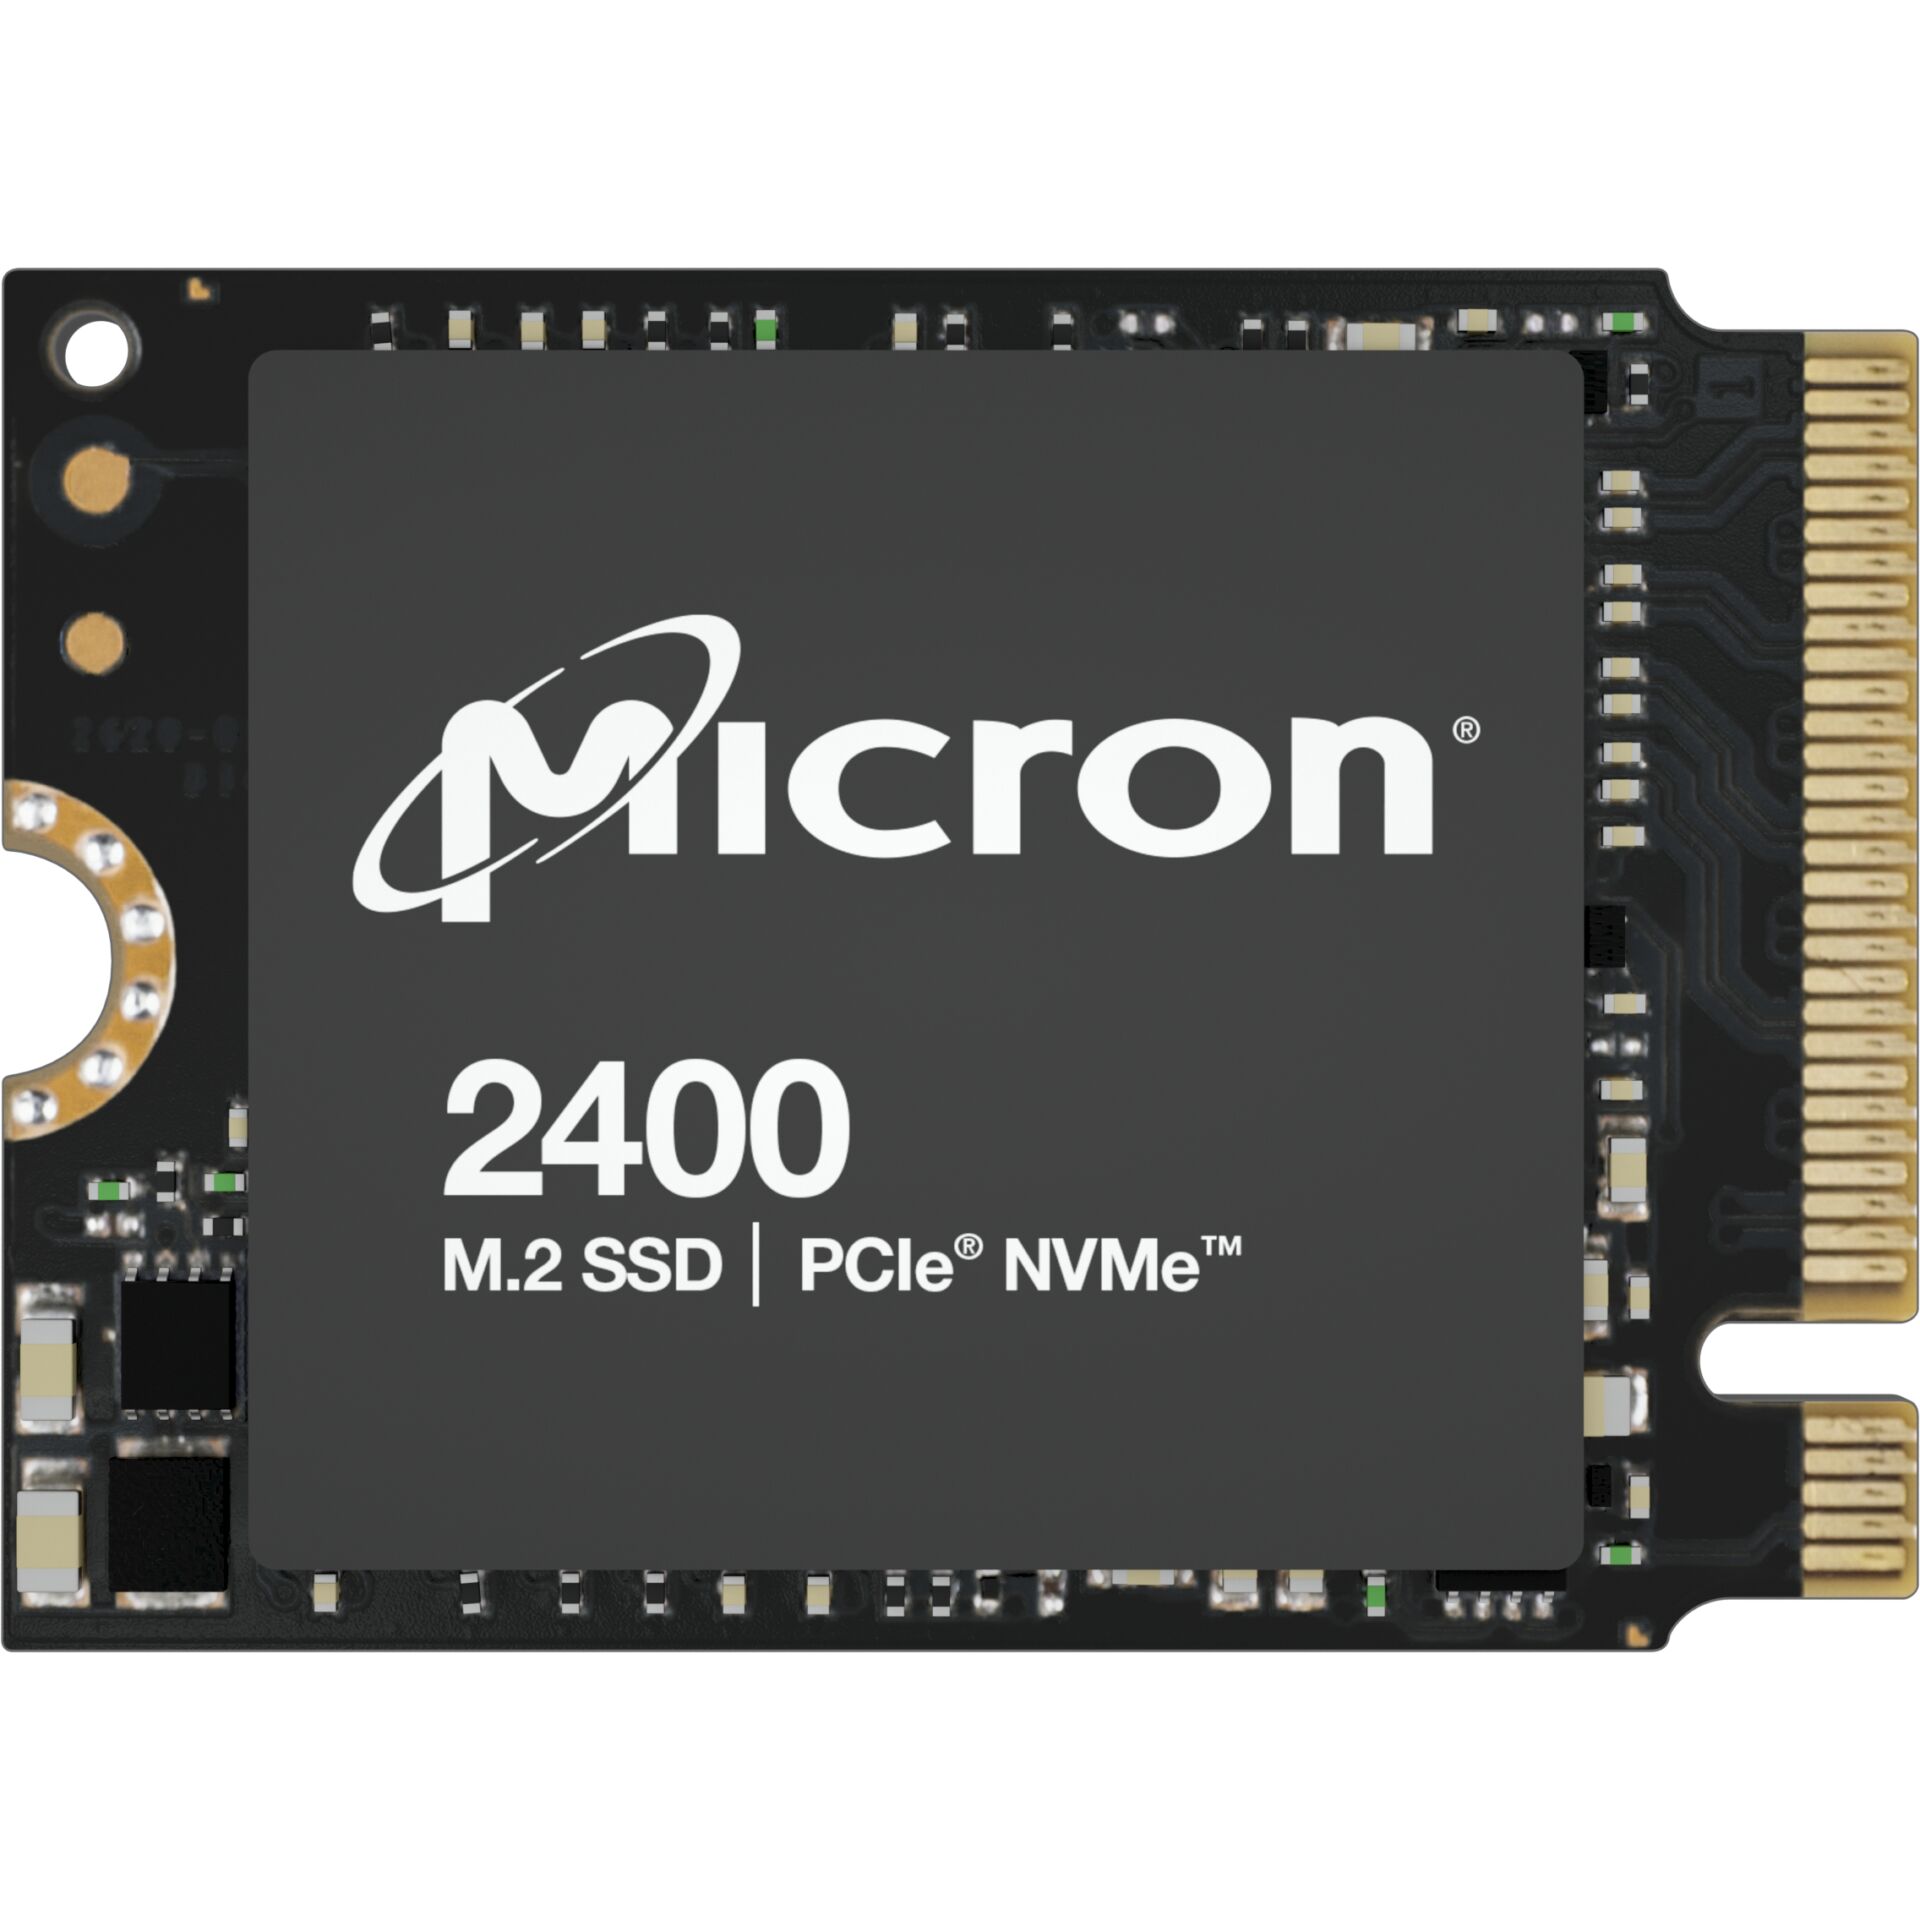 Micron 2400 2TB NVMe M.2 (22x30mm) Non-SED